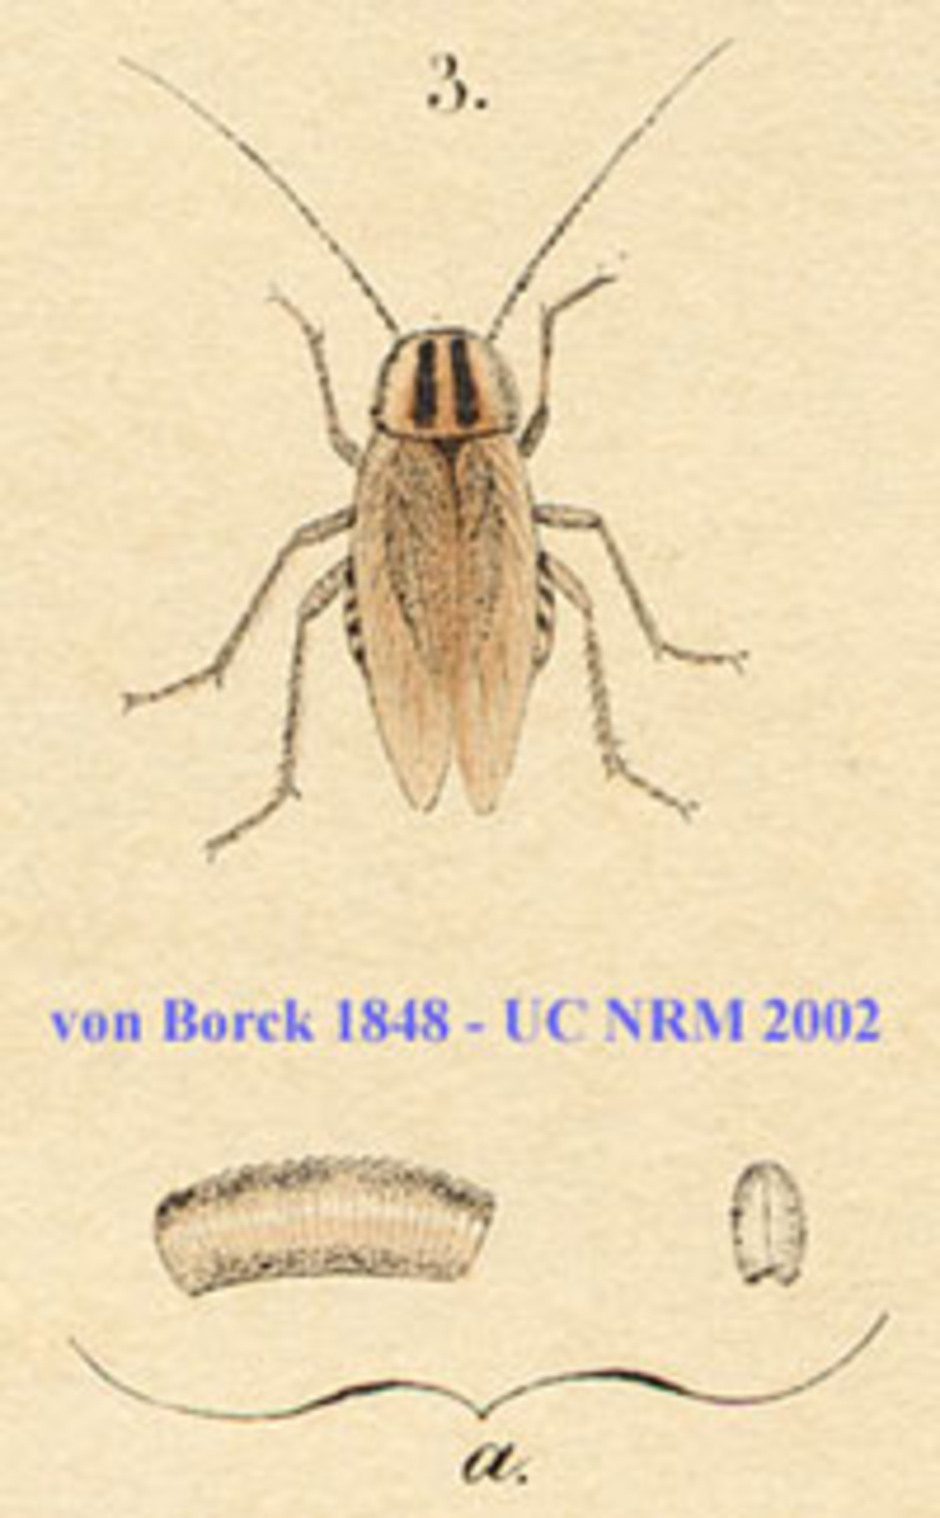 Tysk kackerlacka. Vuxen hona och förstoring av äggkapseln, detalj från handkolorerad plansch från von Borcks Skandinaviens rätvingade insekters naturalie-historia anno 1848.